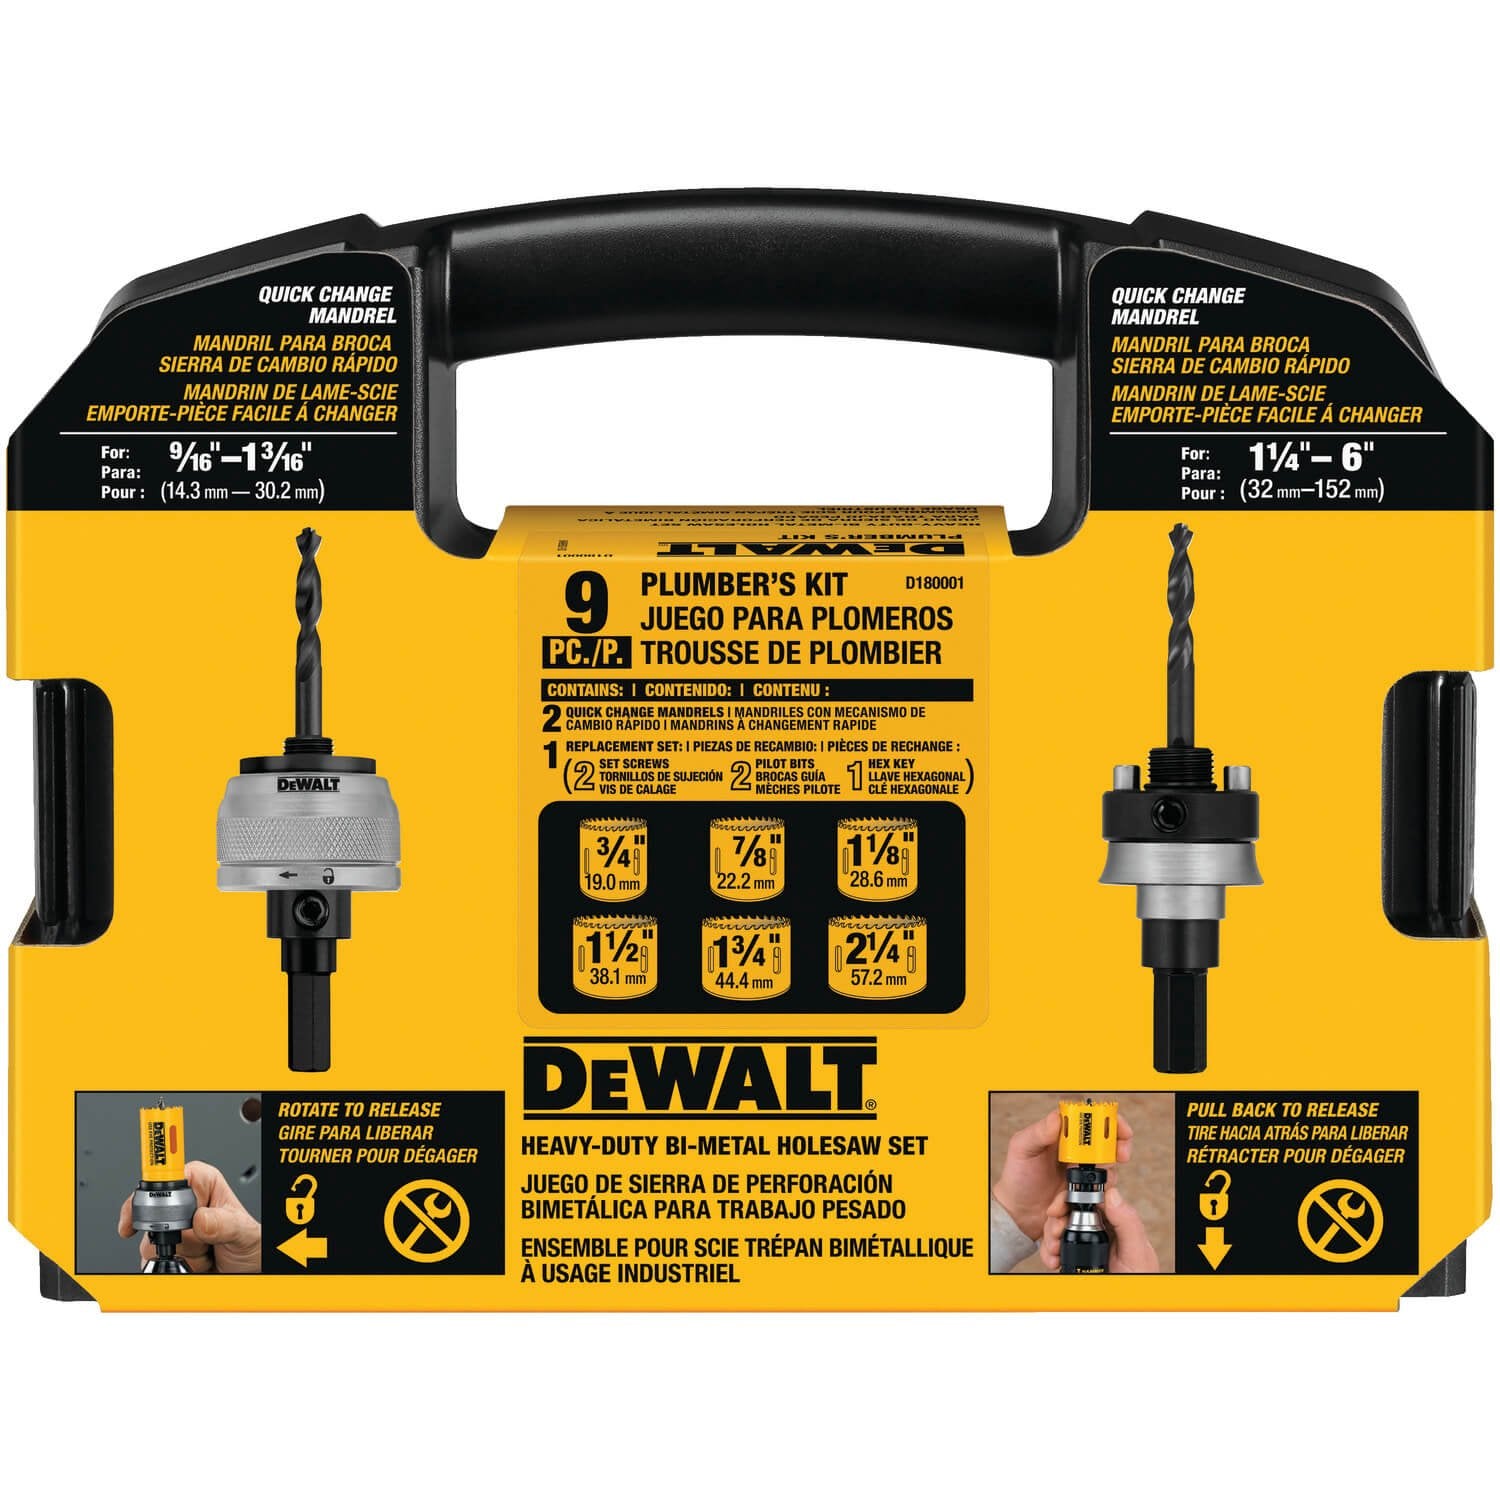 DEWALT D180001 Standard Plumbers Bi-Metal Hole Saw Kit